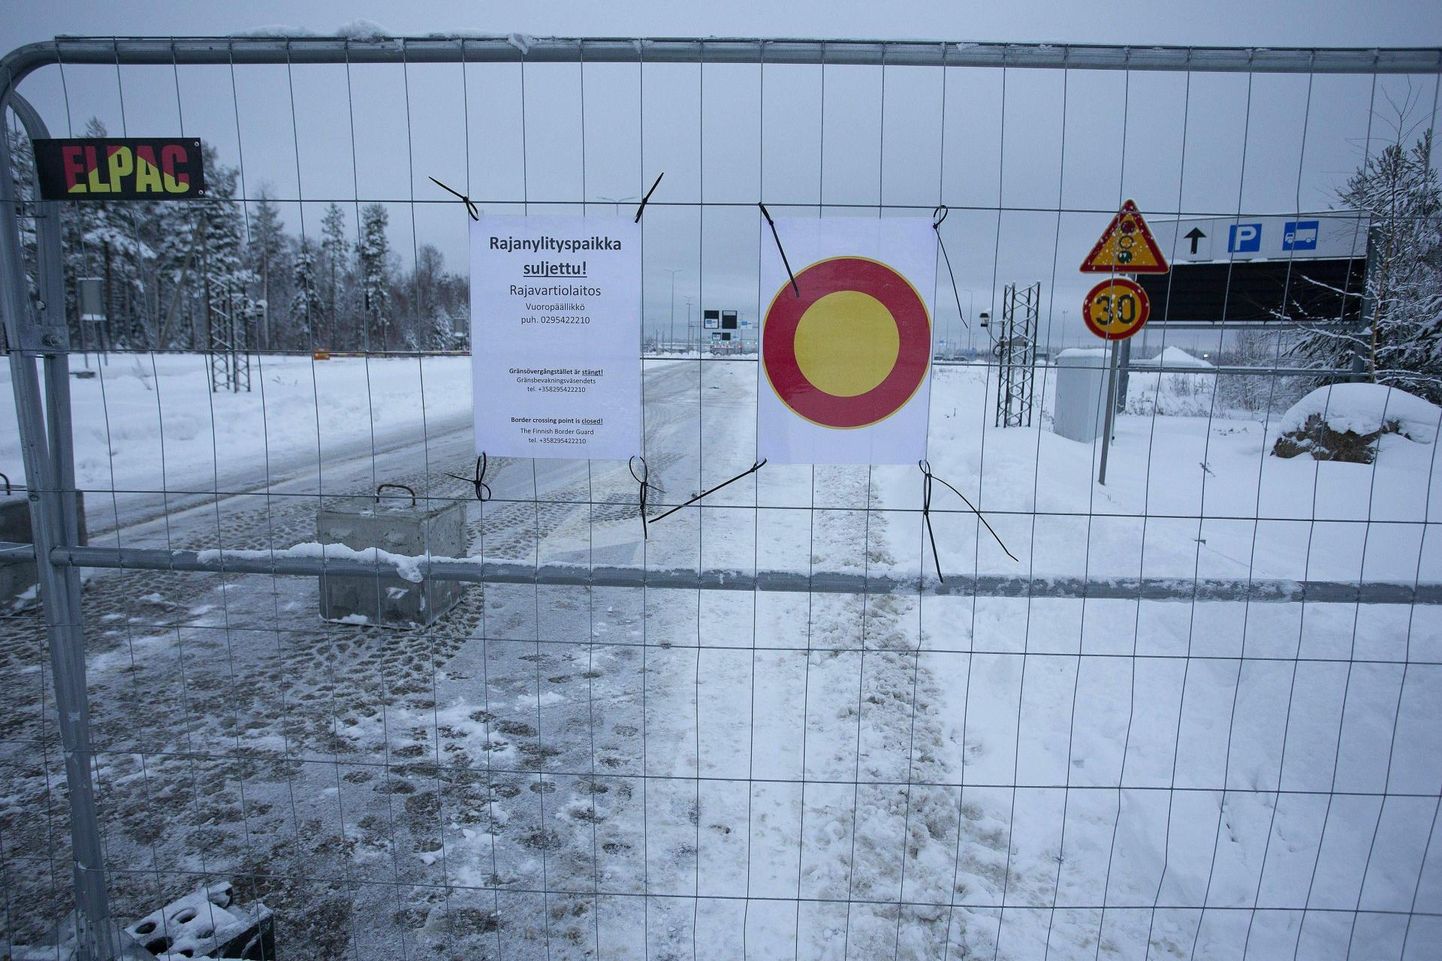 Vaalimaa suletud piiripunkt läinud laupäeval. Soome avas kaks ületuskohta piiril Venemaaga, nende seas Vaalimaa, eelmise nädala neljapäeval, kuid novembri lõpus kogu idapiiri sulgemise tinginud migrandivoog Venemaalt taastus sisuliselt kohe ning sundis Helsingit ületuskohti uuesti kinni panema.